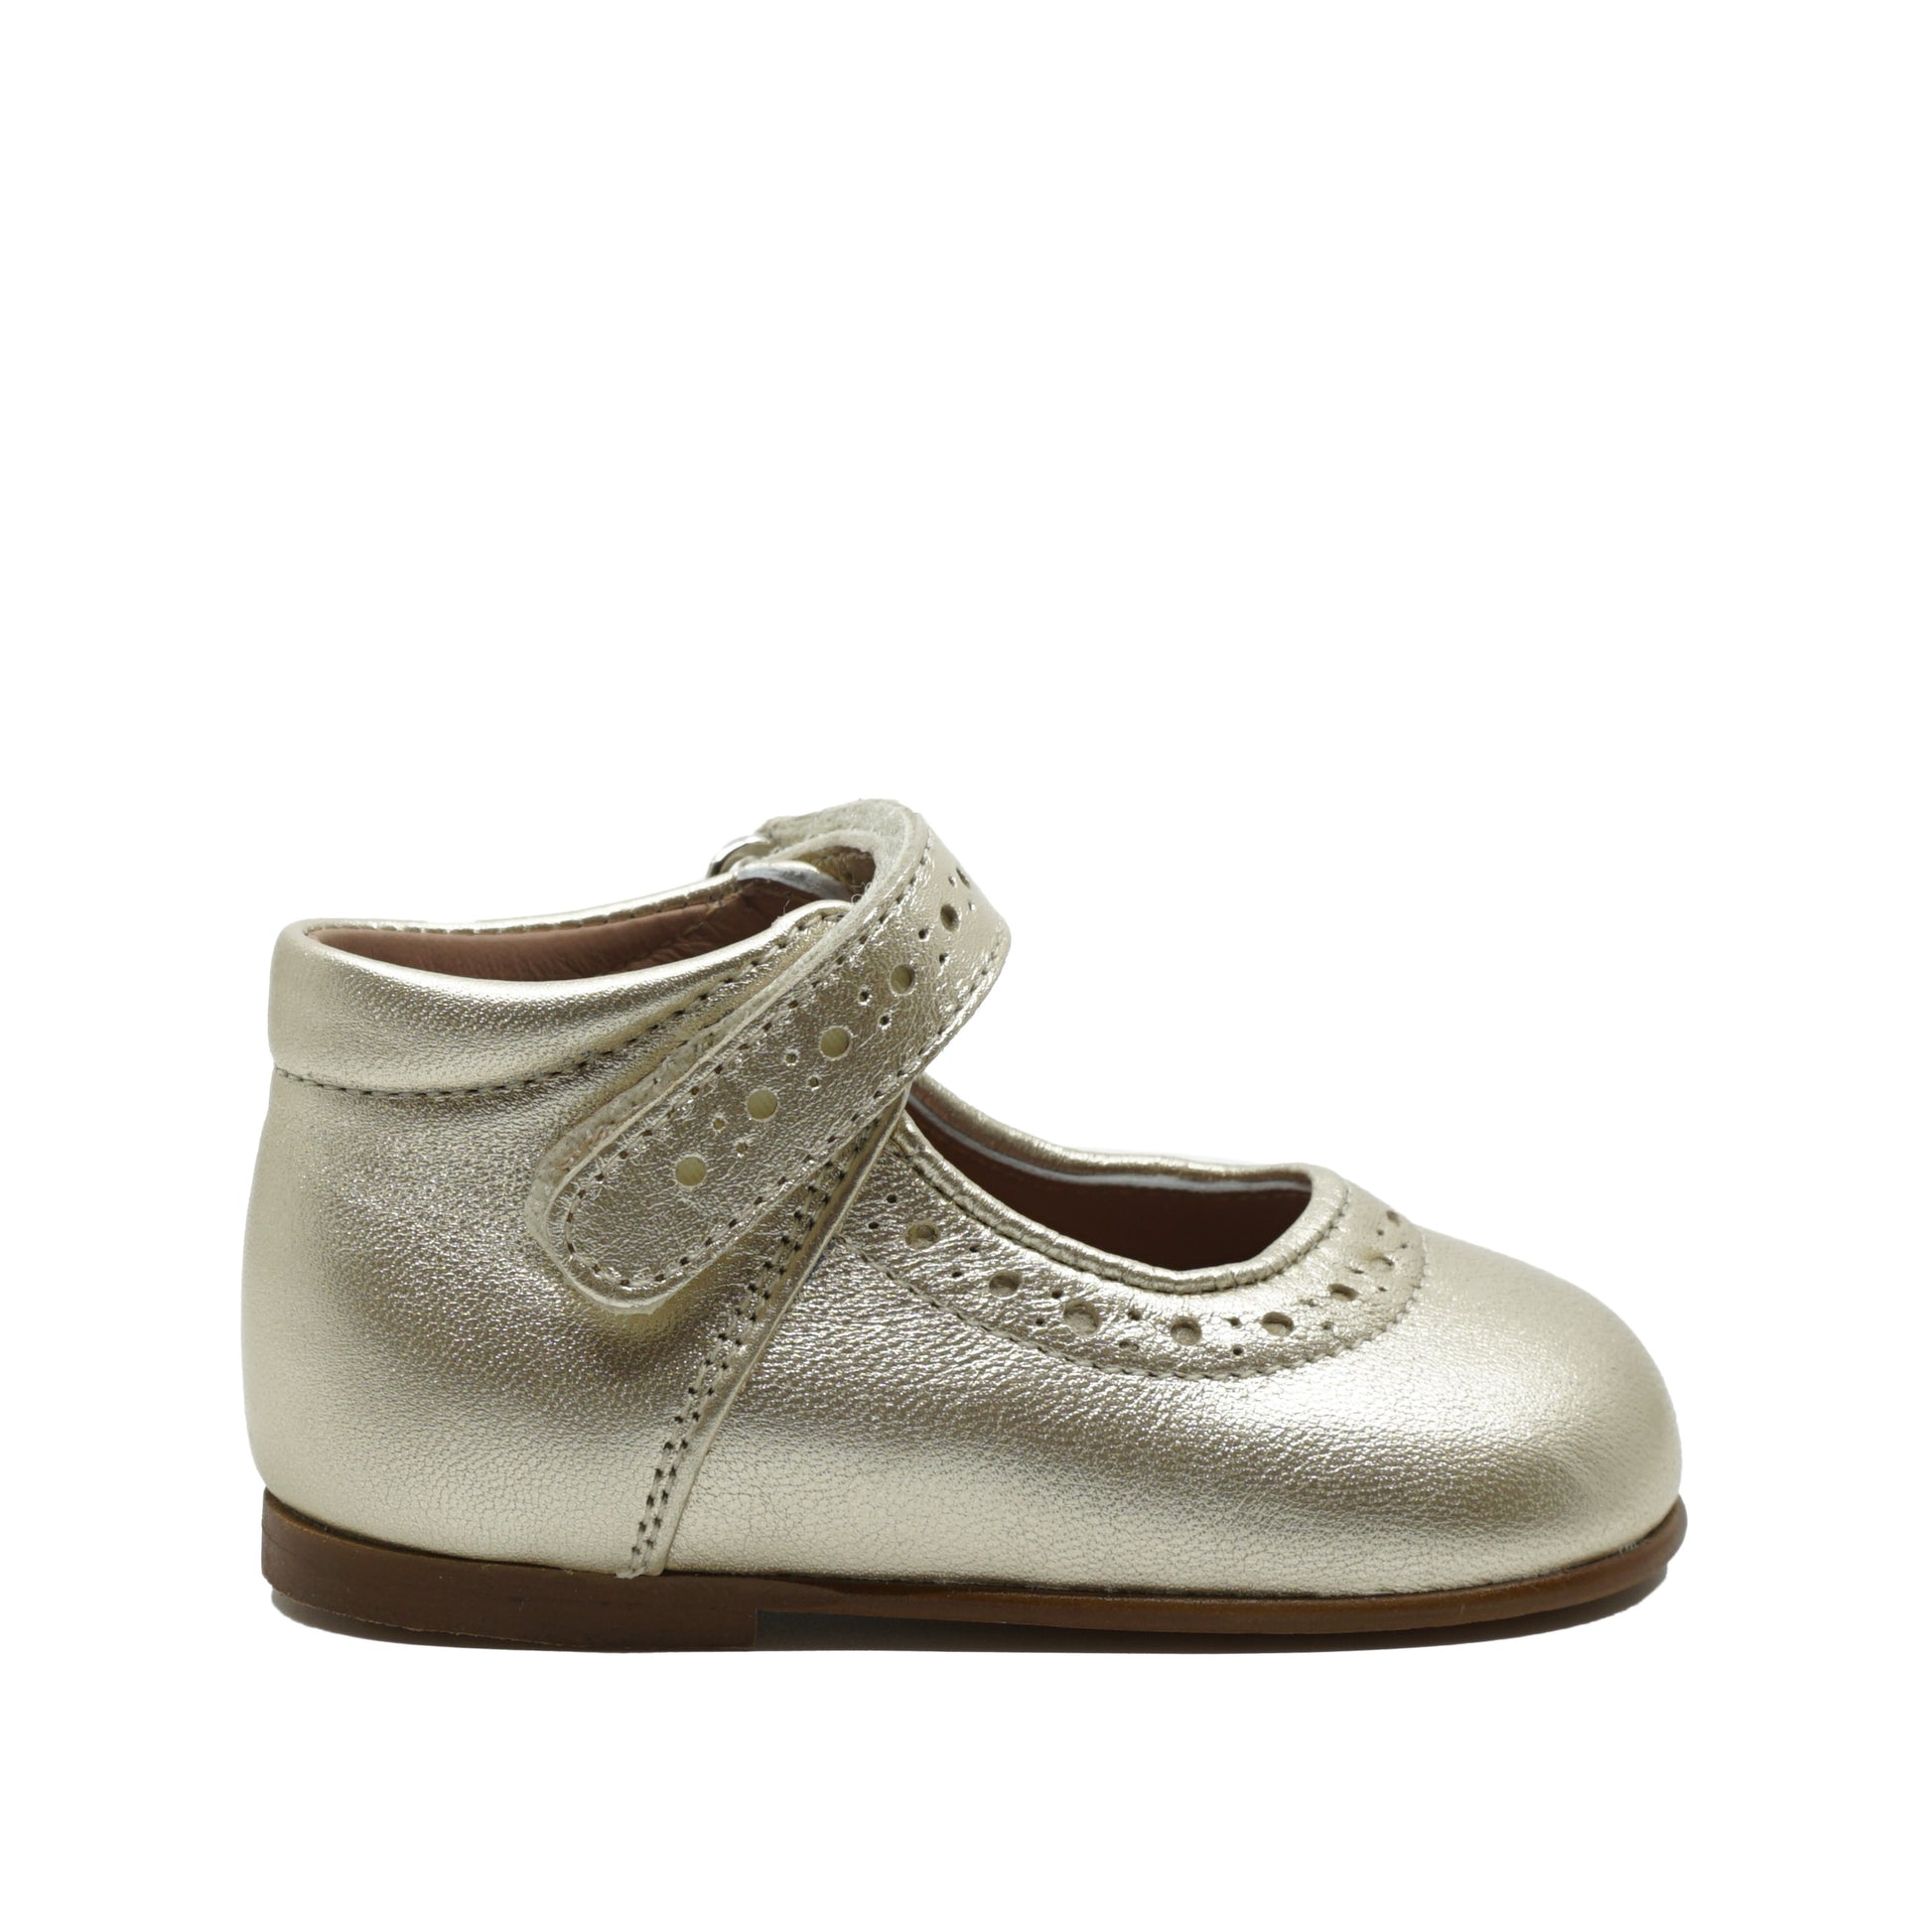 Eerste schoentjes voor meisje in goud leder van het merk Eli. www.septemberstories.be